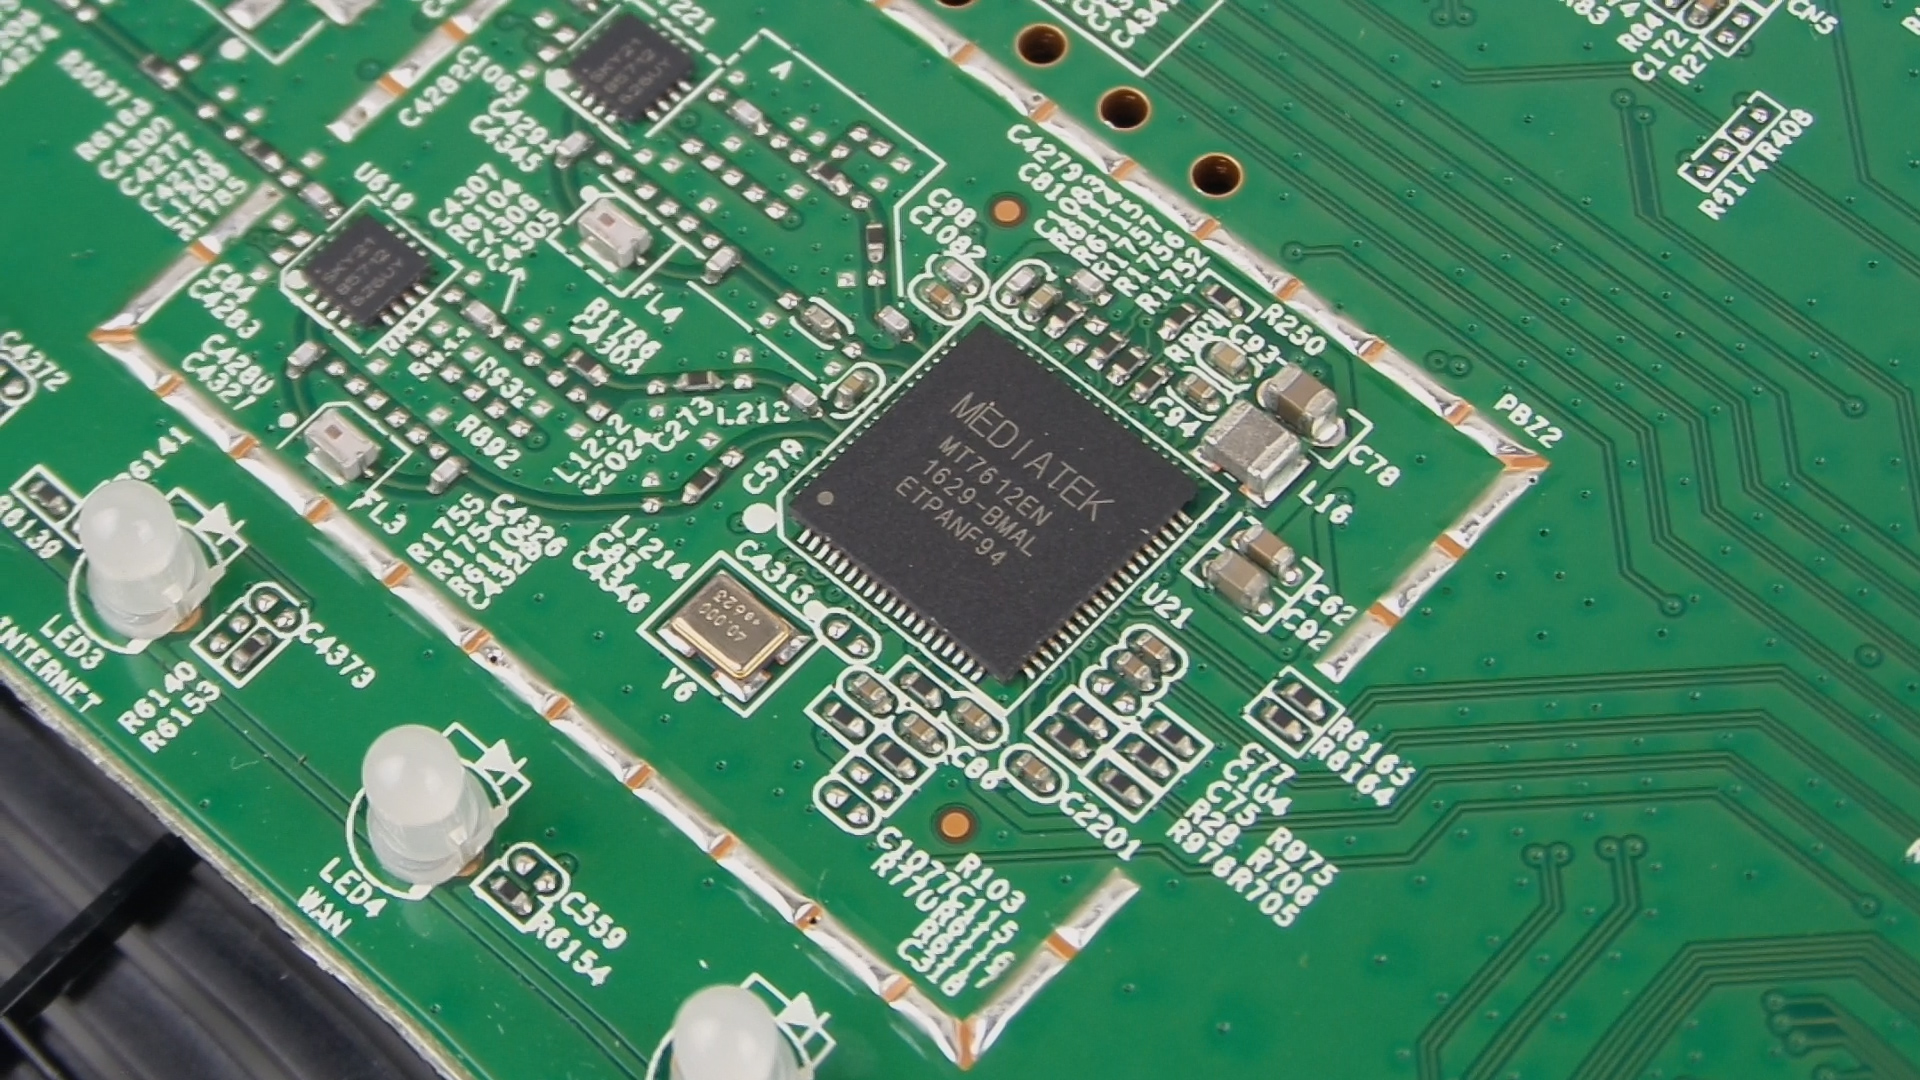 Asus DSL-AC55U modem/router incelemesi 'Torrent destekli, çekim alanı iyi'